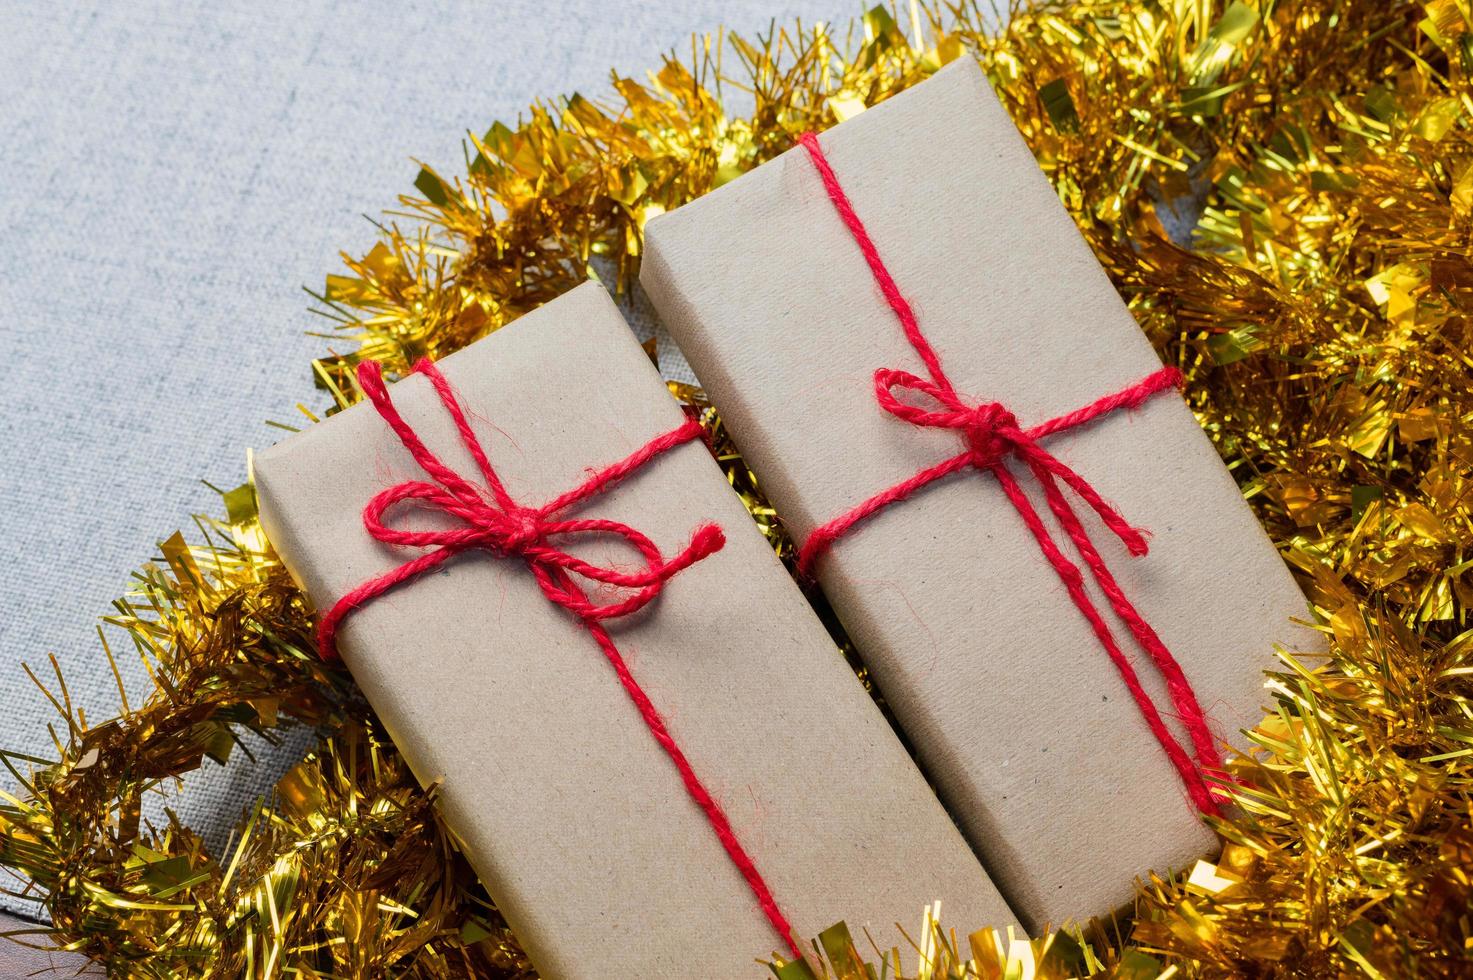 Geschenkbox, Geschenkbox des neuen Jahres, Weihnachtsgeschenkbox, Kopienraum. Weihnachten, Jahr, Geburtstagskonzept. foto